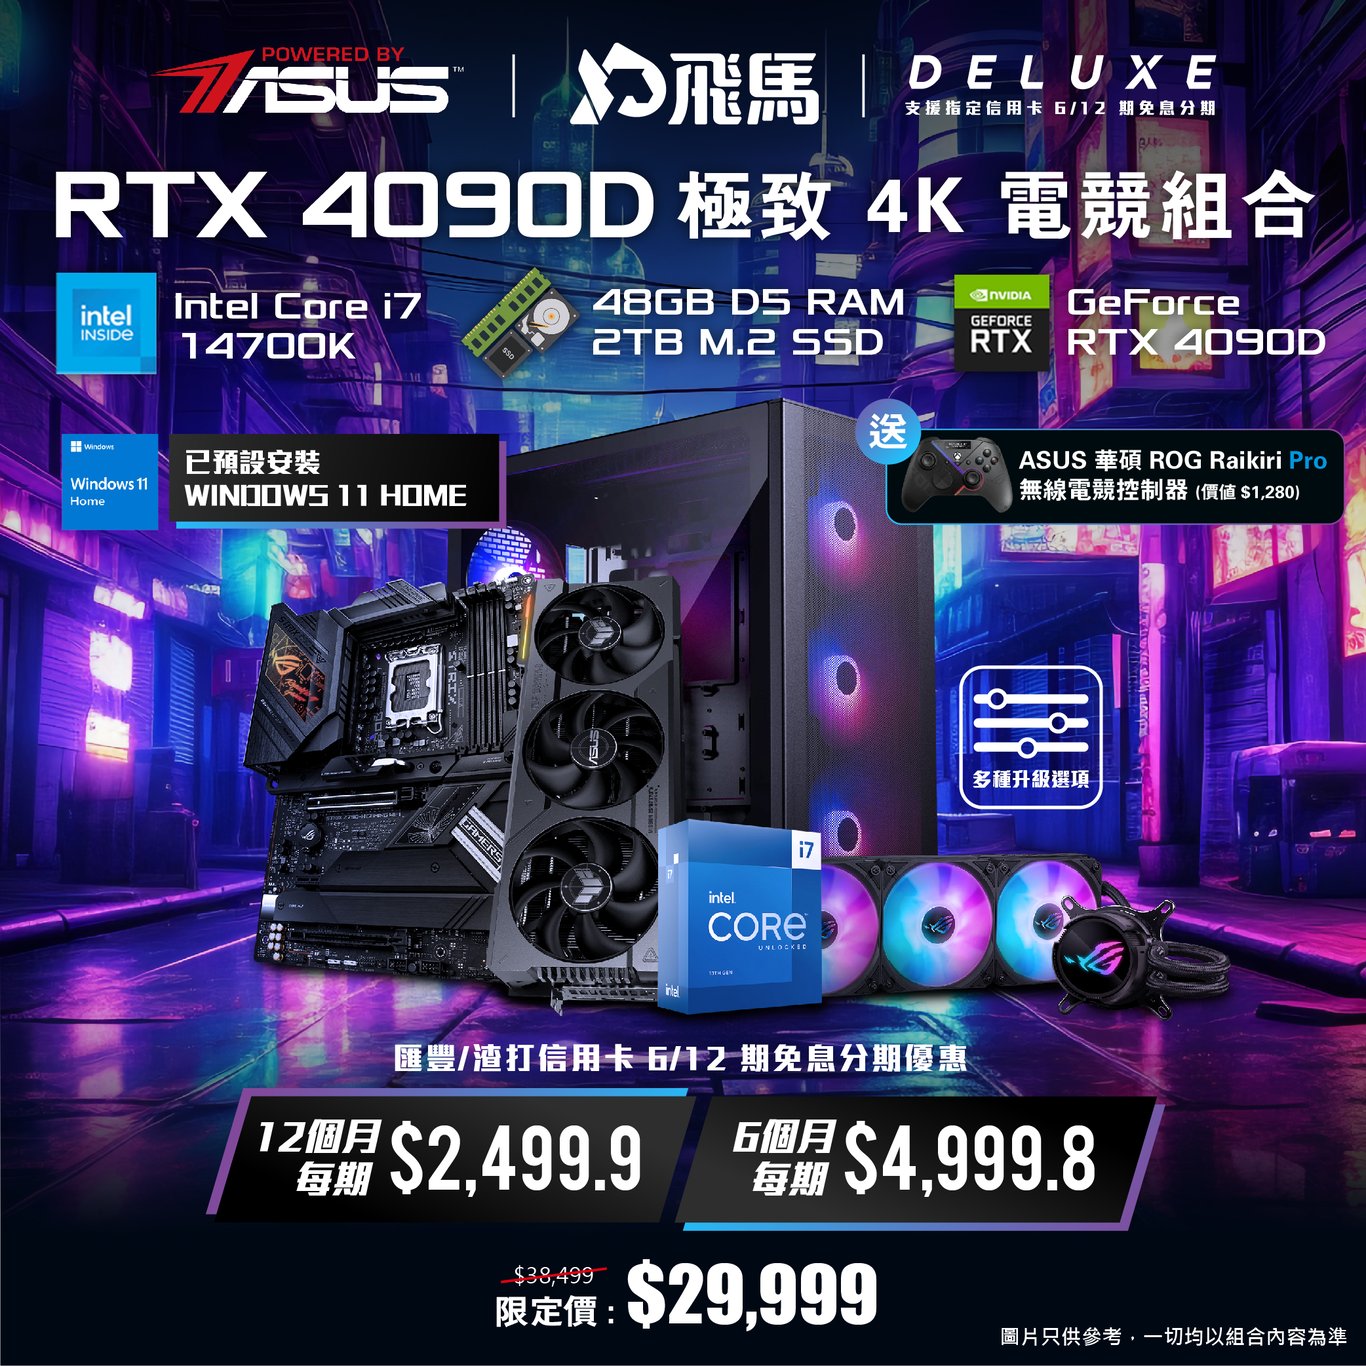 【4K電競】PBA RTX 4090D 極致 4K 電競組合 - DELUXE